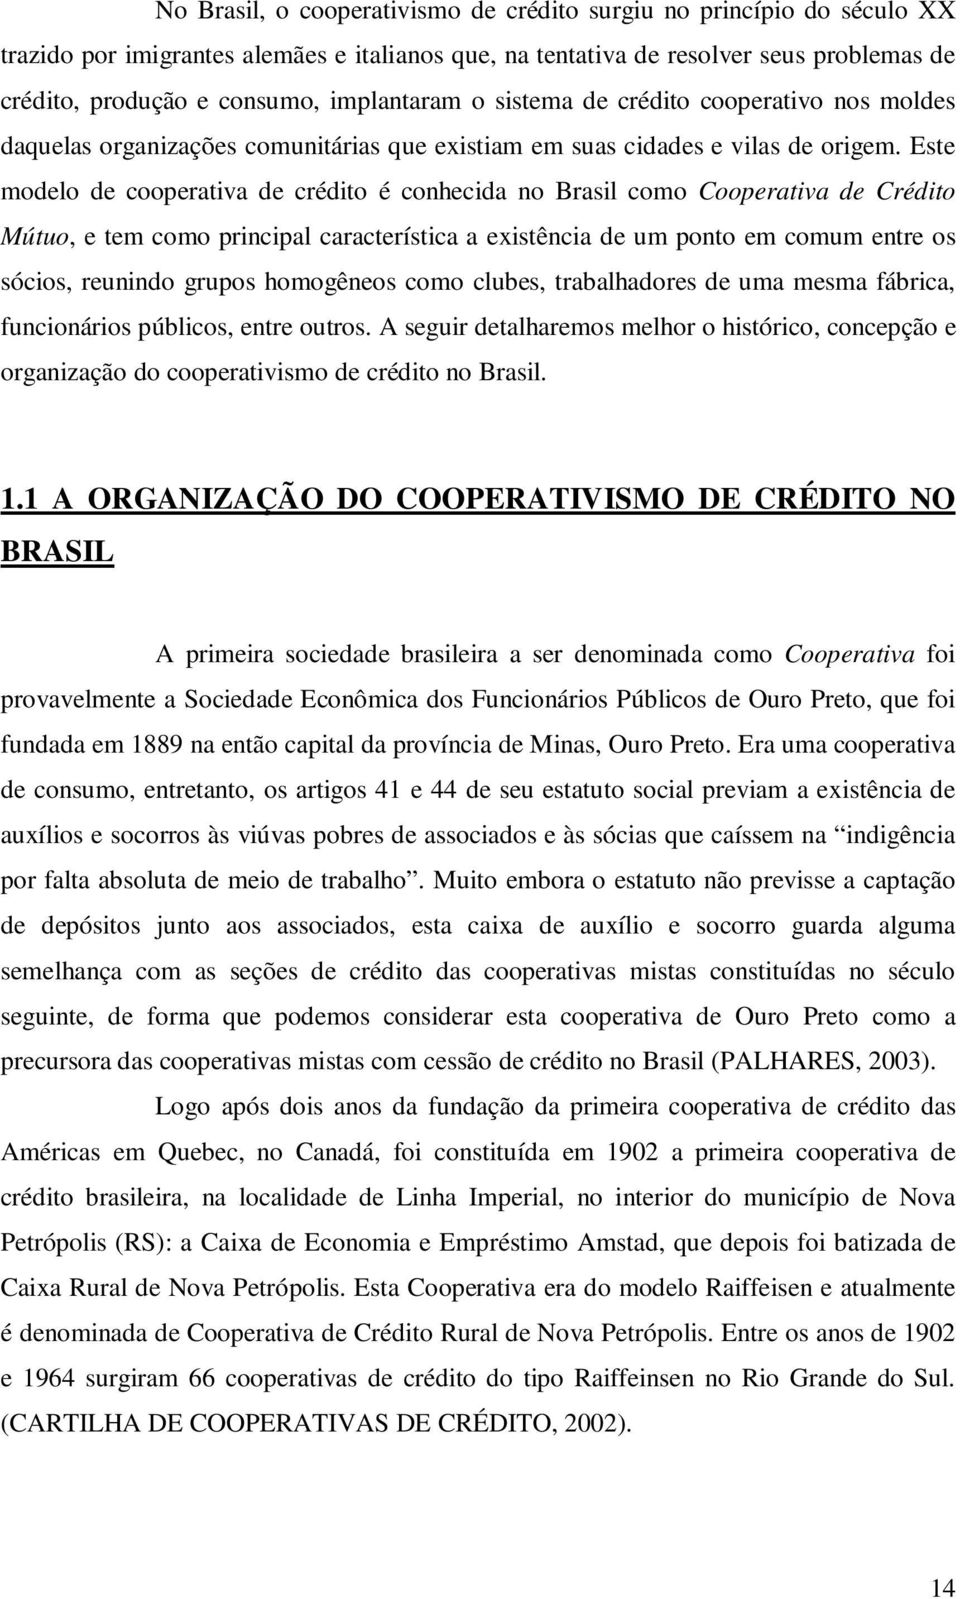 Este modelo de cooperativa de crédito é conhecida no Brasil como Cooperativa de Crédito Mútuo, e tem como principal característica a existência de um ponto em comum entre os sócios, reunindo grupos